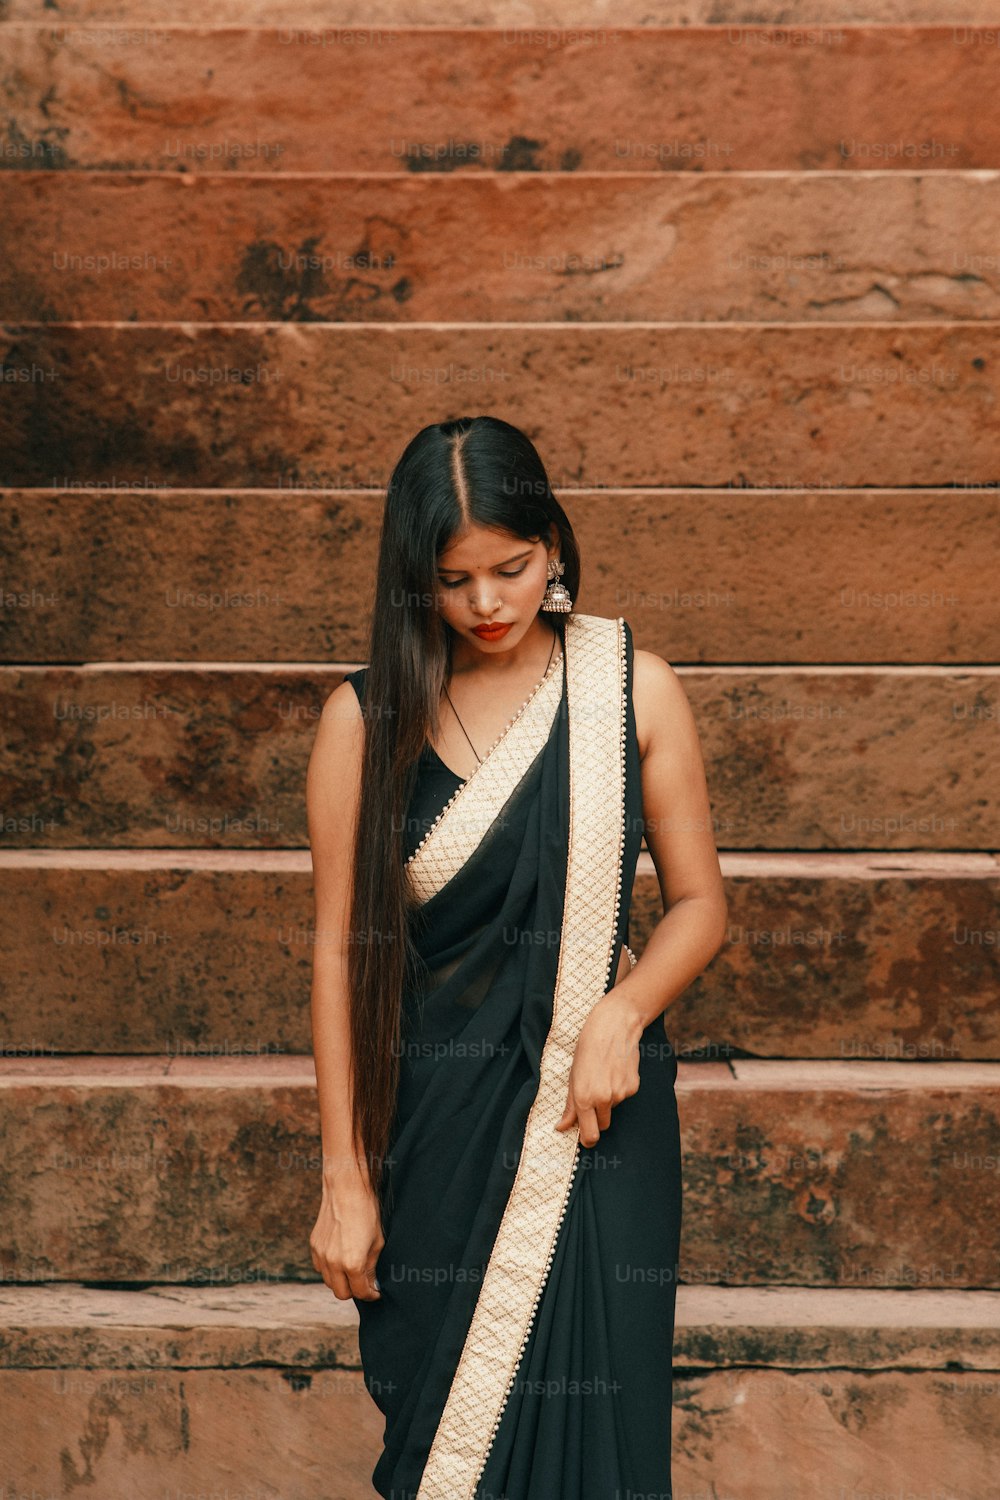 Eine Frau in einem schwarz-weißen Sari